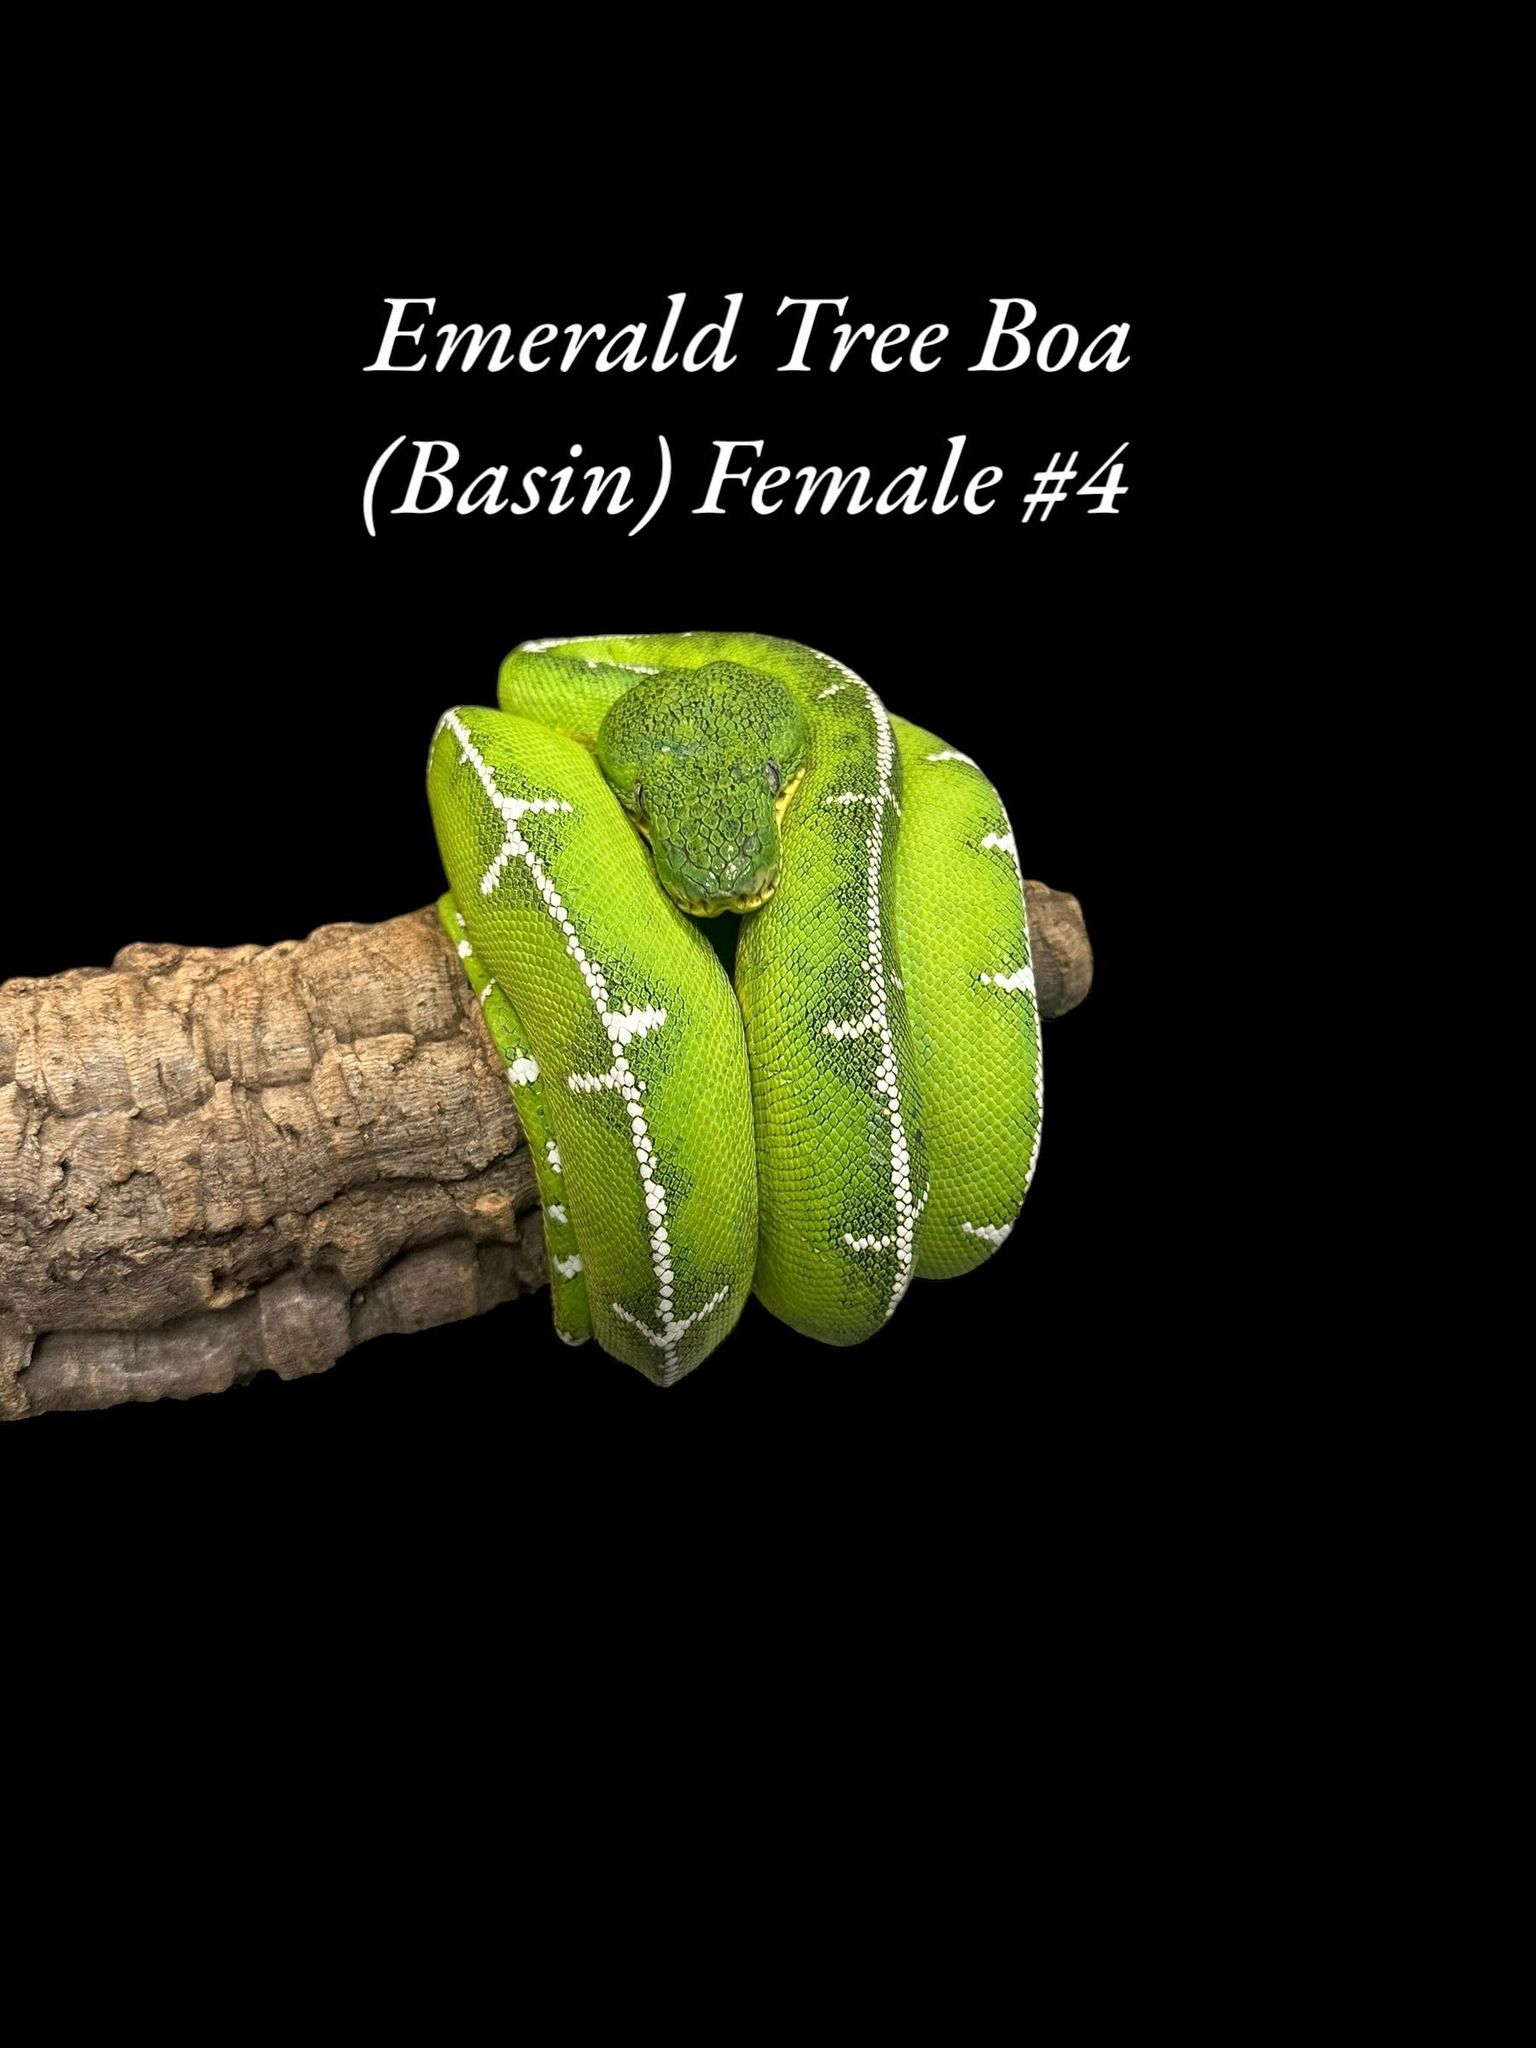 Emerald Tree Boa (Basin)